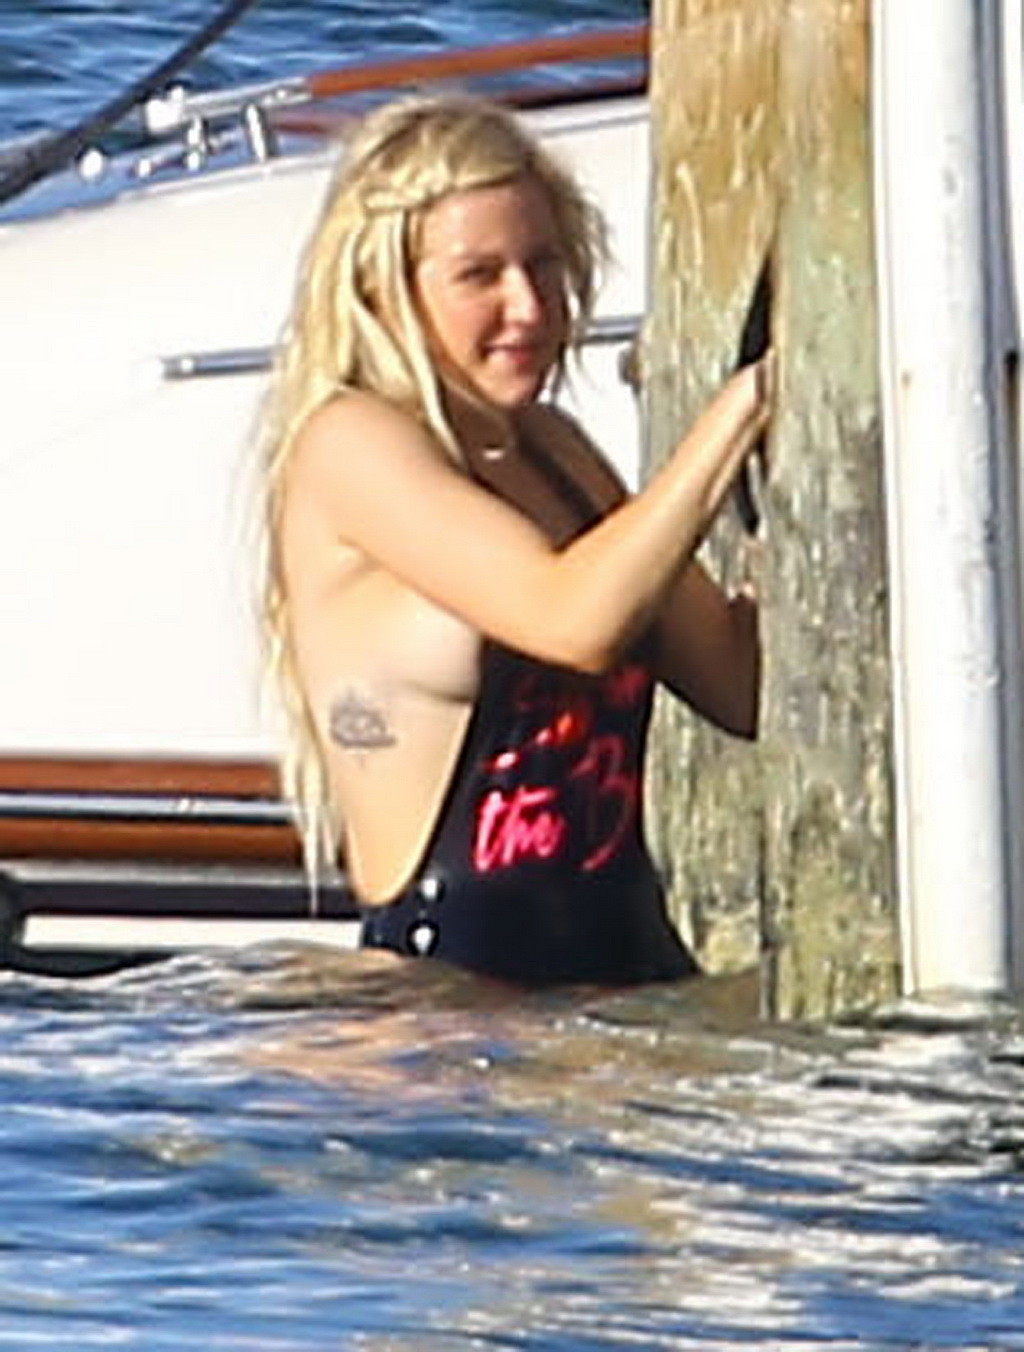 Ellie goulding en monokini noir lors de ses vacances à miami beach
 #75197113